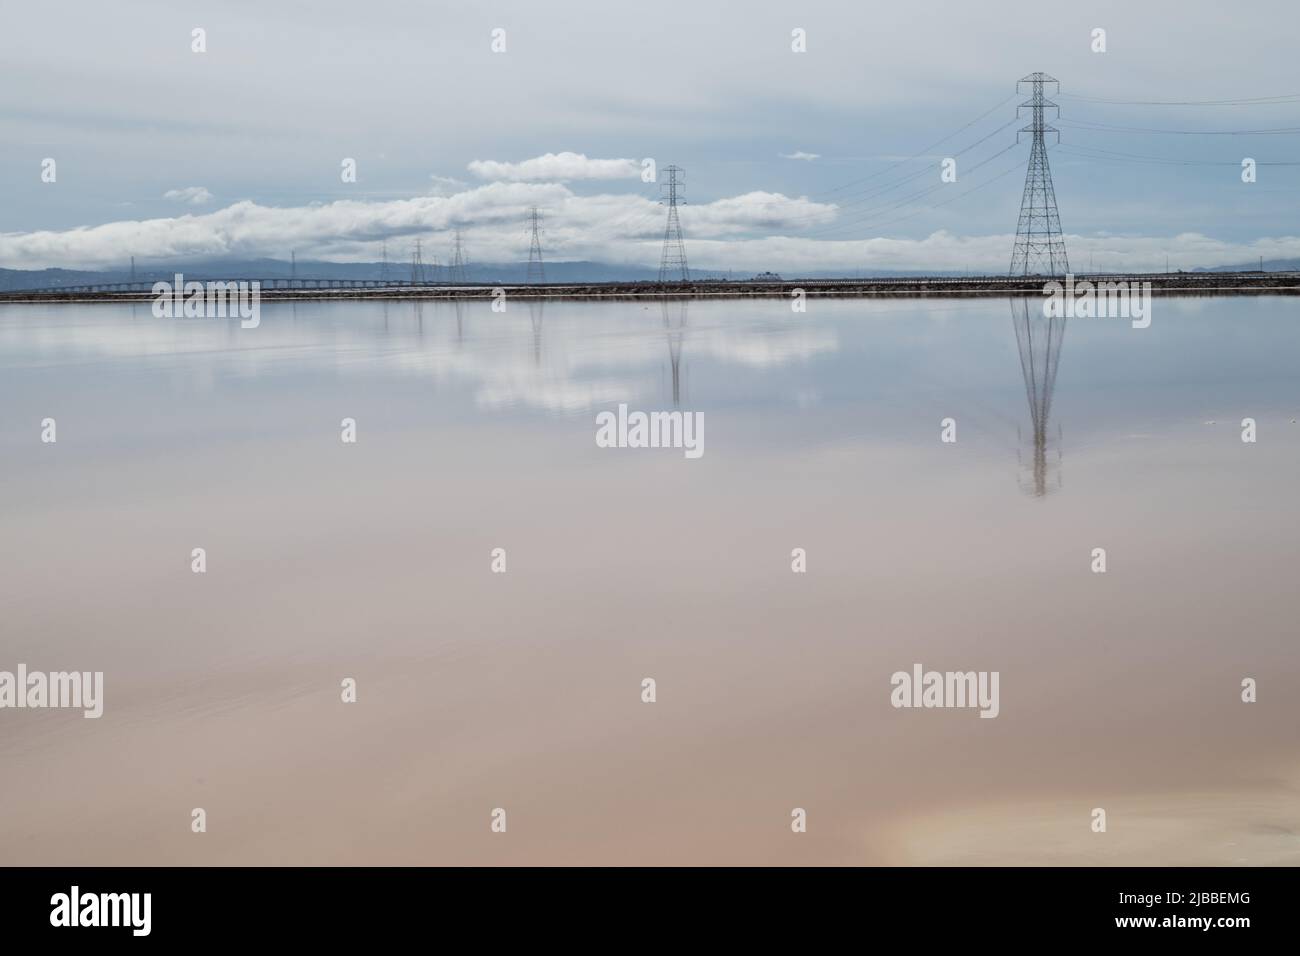 Das spiegelglatte Wasser von Salzverdampfungsteichen, das Wolken und Stromleitungen reflektiert. Stockfoto